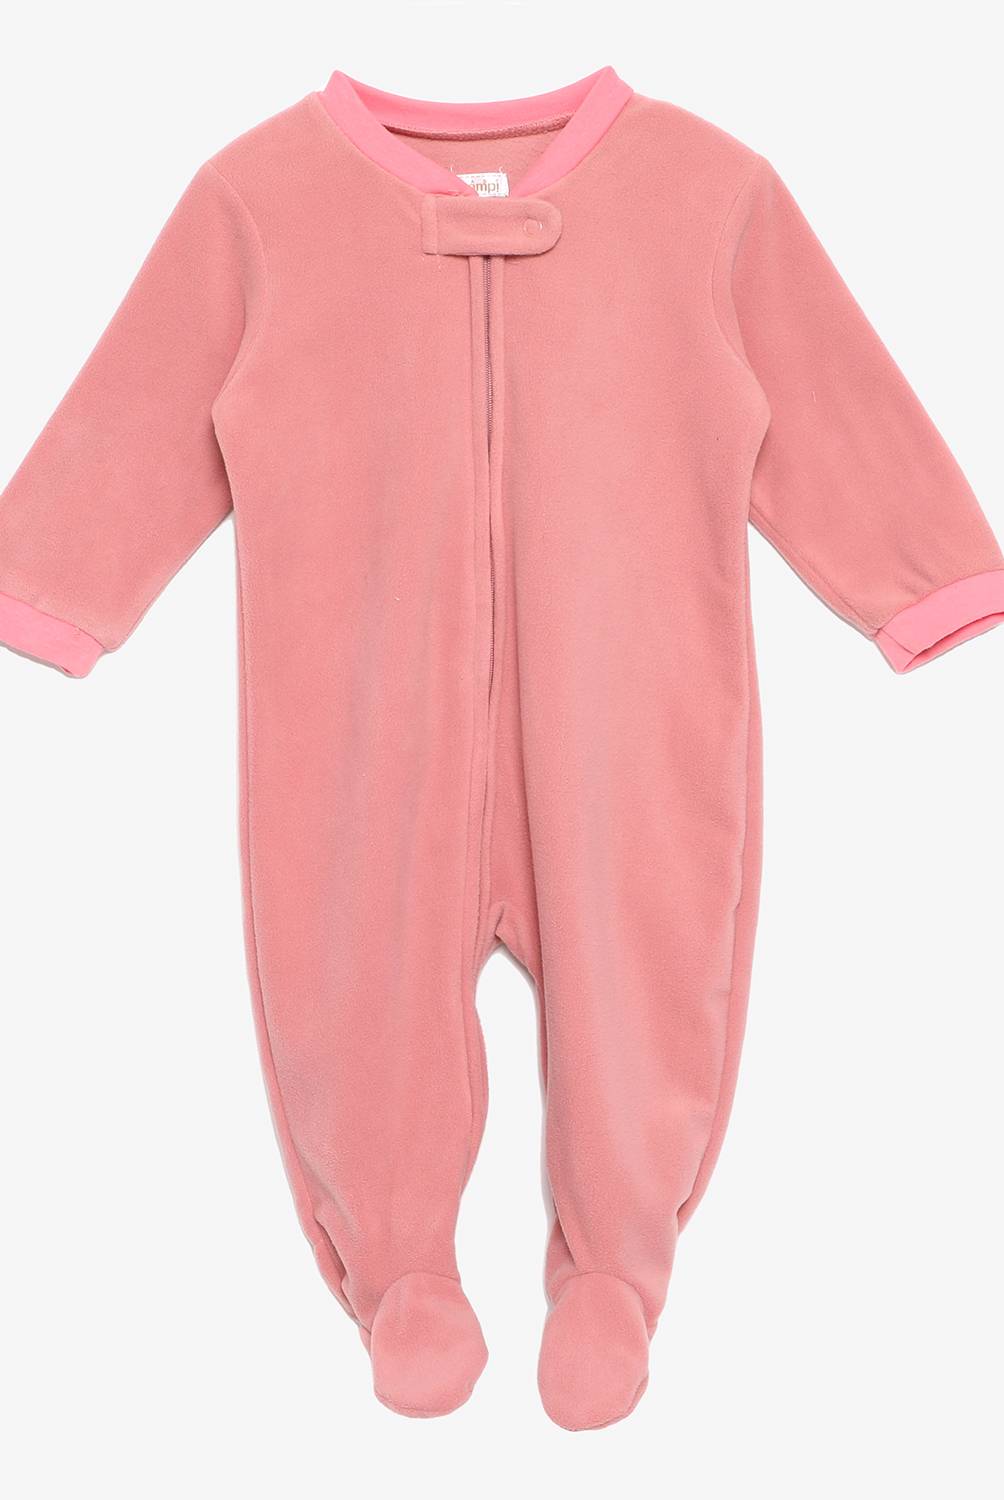 YAMP - Pijama Pack x2 Bebé niña